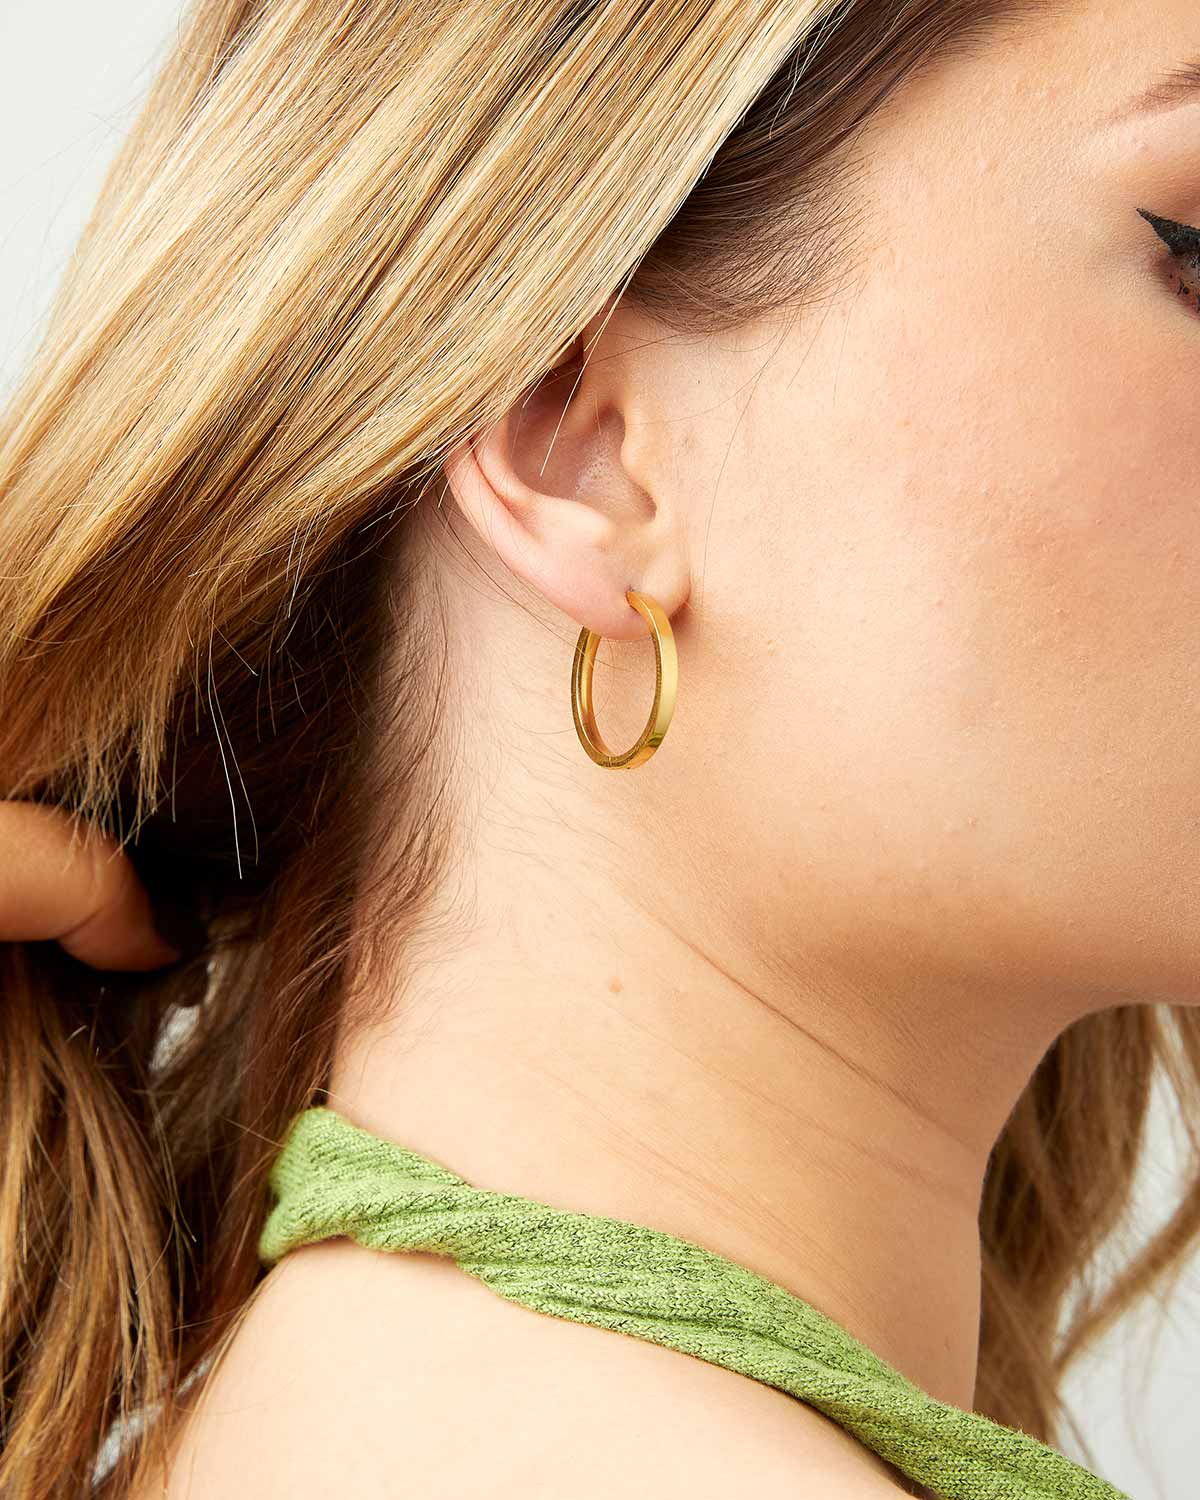 Hinged Gold Hoop Earrings